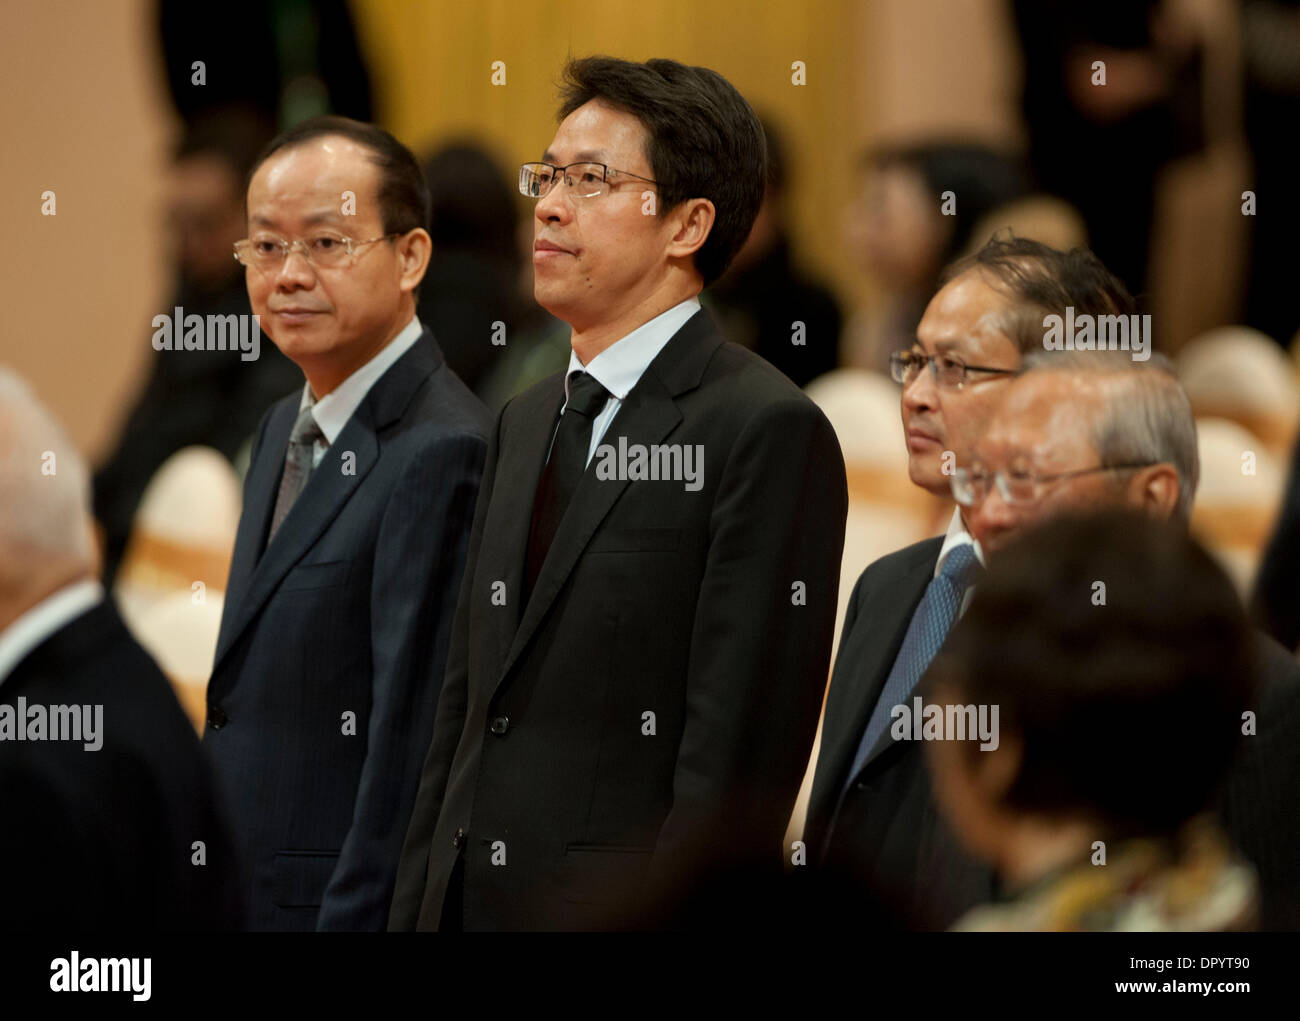 Hong Kong, Shaw. 17 ene, 2014. Zhang Xiaoming (2L), director de la Oficina de Enlace del Gobierno Popular Central de China en Hong Kong, atiende el memorial del magnate de los medios de comunicación de Hong Kong y filántropo Run Run Shaw en Hong Kong, sur de China, el 17 de enero de 2014. Shaw, entre 107, falleció en su casa en Hong Kong el 7 de enero de 2014. Shaw fue entusiasta de caridad y donó más de 10 millones de dólares de Hong Kong (unos 1,29 millones de dólares EE.UU.) a la China continental, con una gran suma para el desarrollo de su educación. © Lui Siu Wai/Xinhua/Alamy Live News Foto de stock